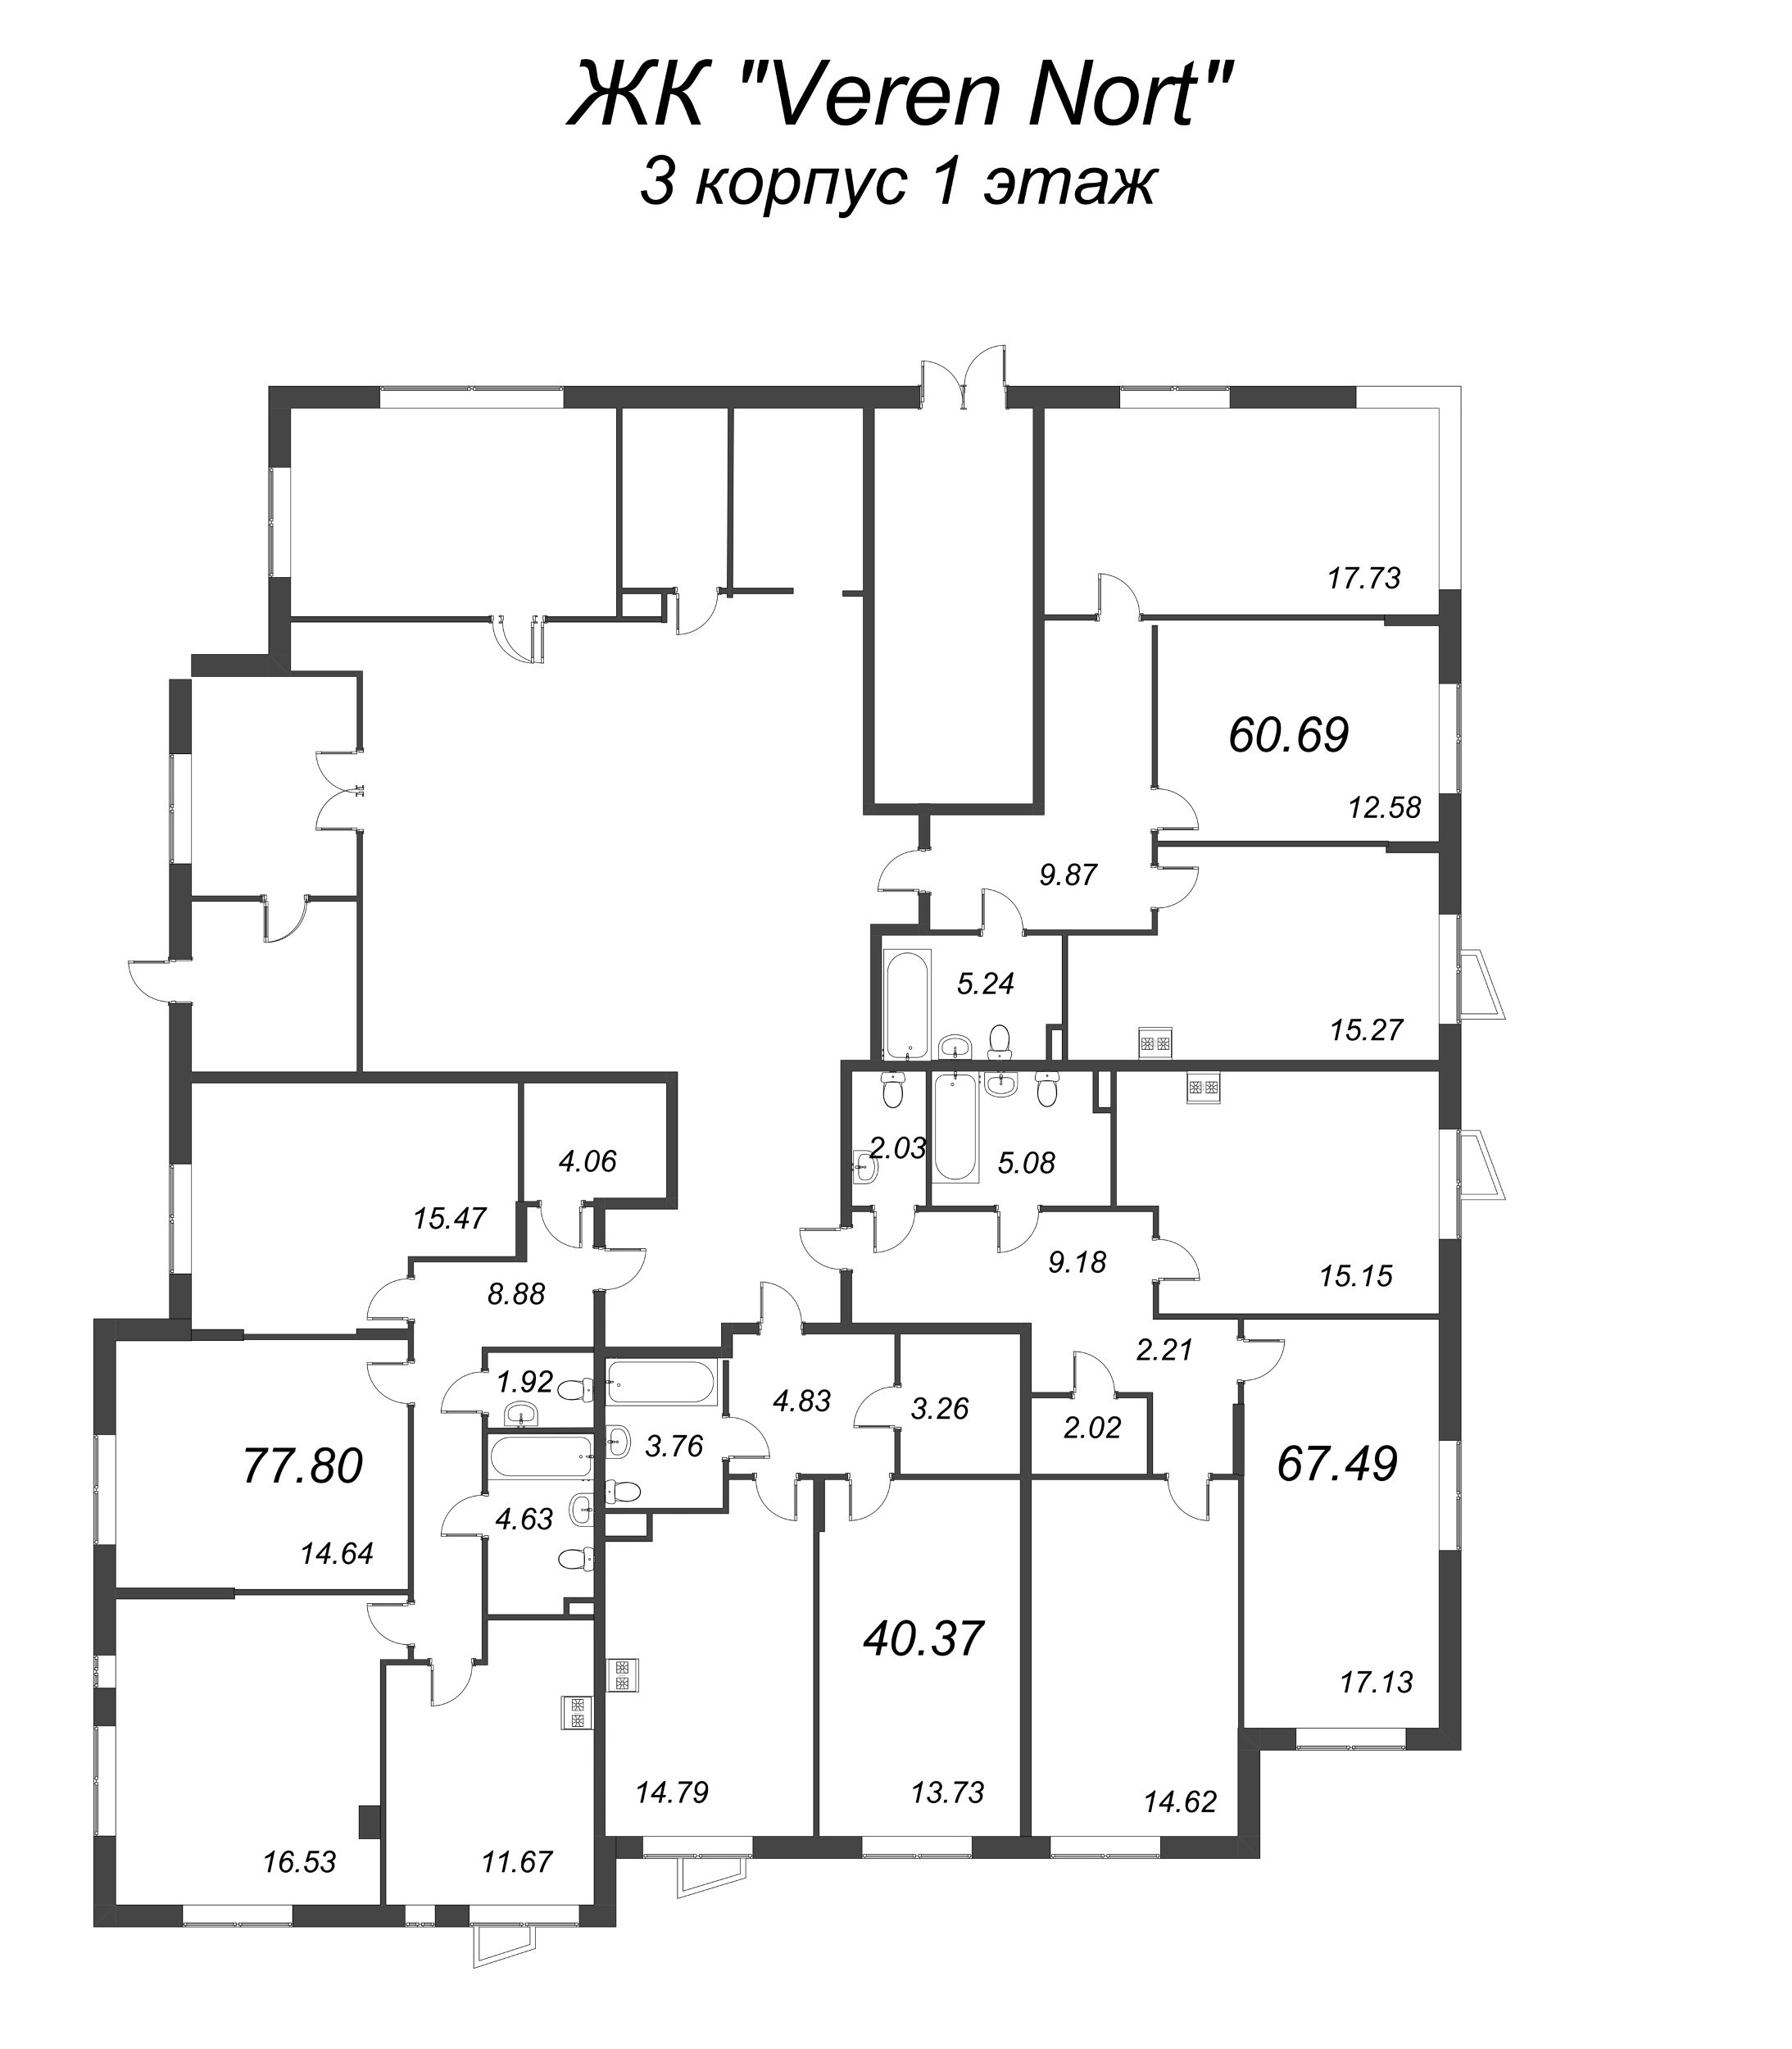 4-комнатная (Евро) квартира, 77.8 м² в ЖК "VEREN NORT сертолово" - планировка этажа